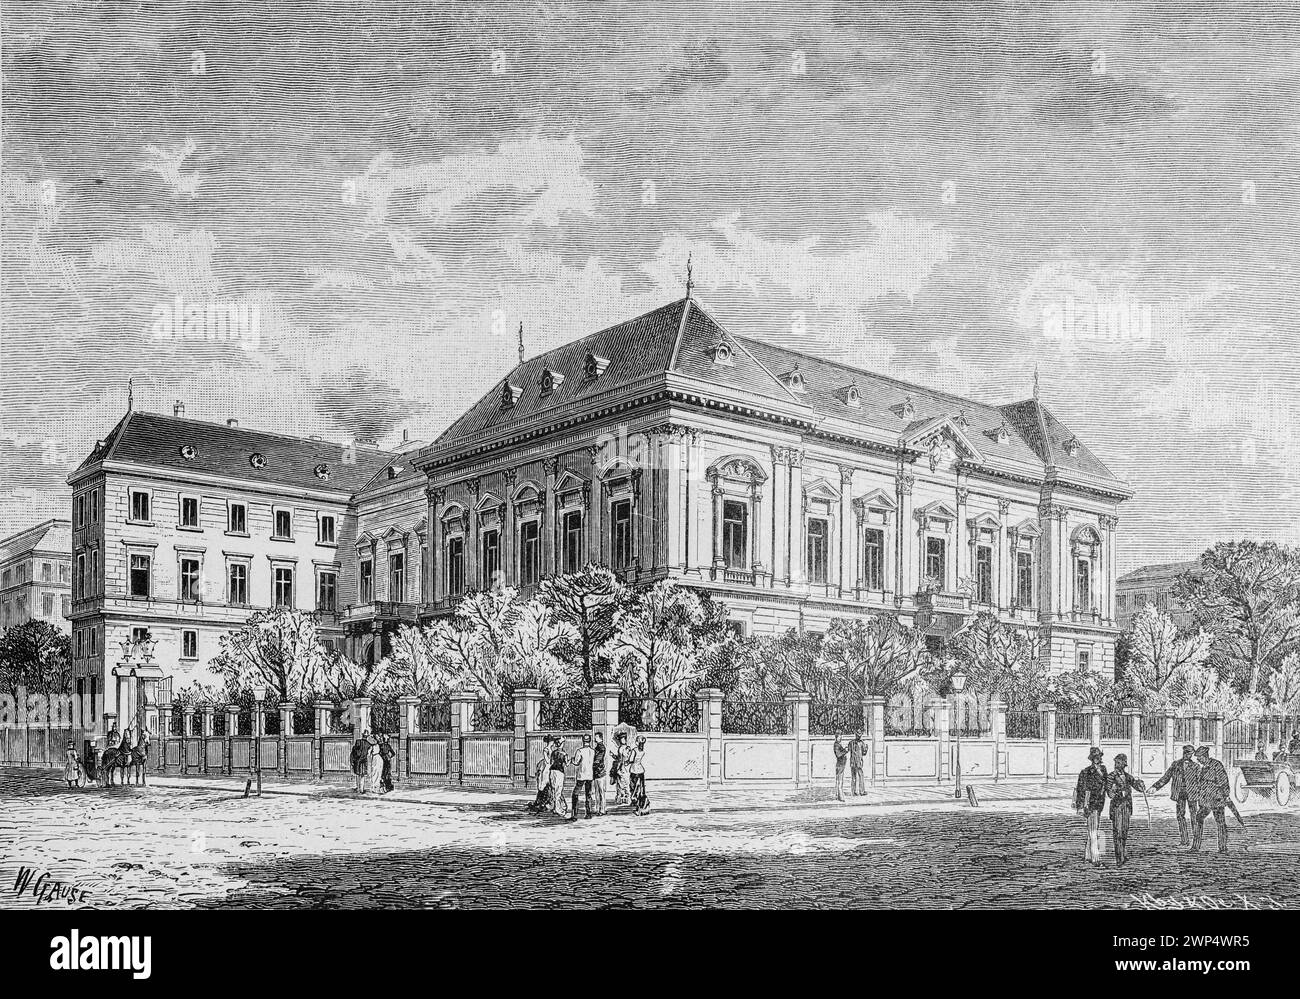 L'hôtel ambassadeur allemand à Vienne, ambassade, politique, grand bâtiment, clôture, walker, Autriche, illustration historique 1890 Banque D'Images